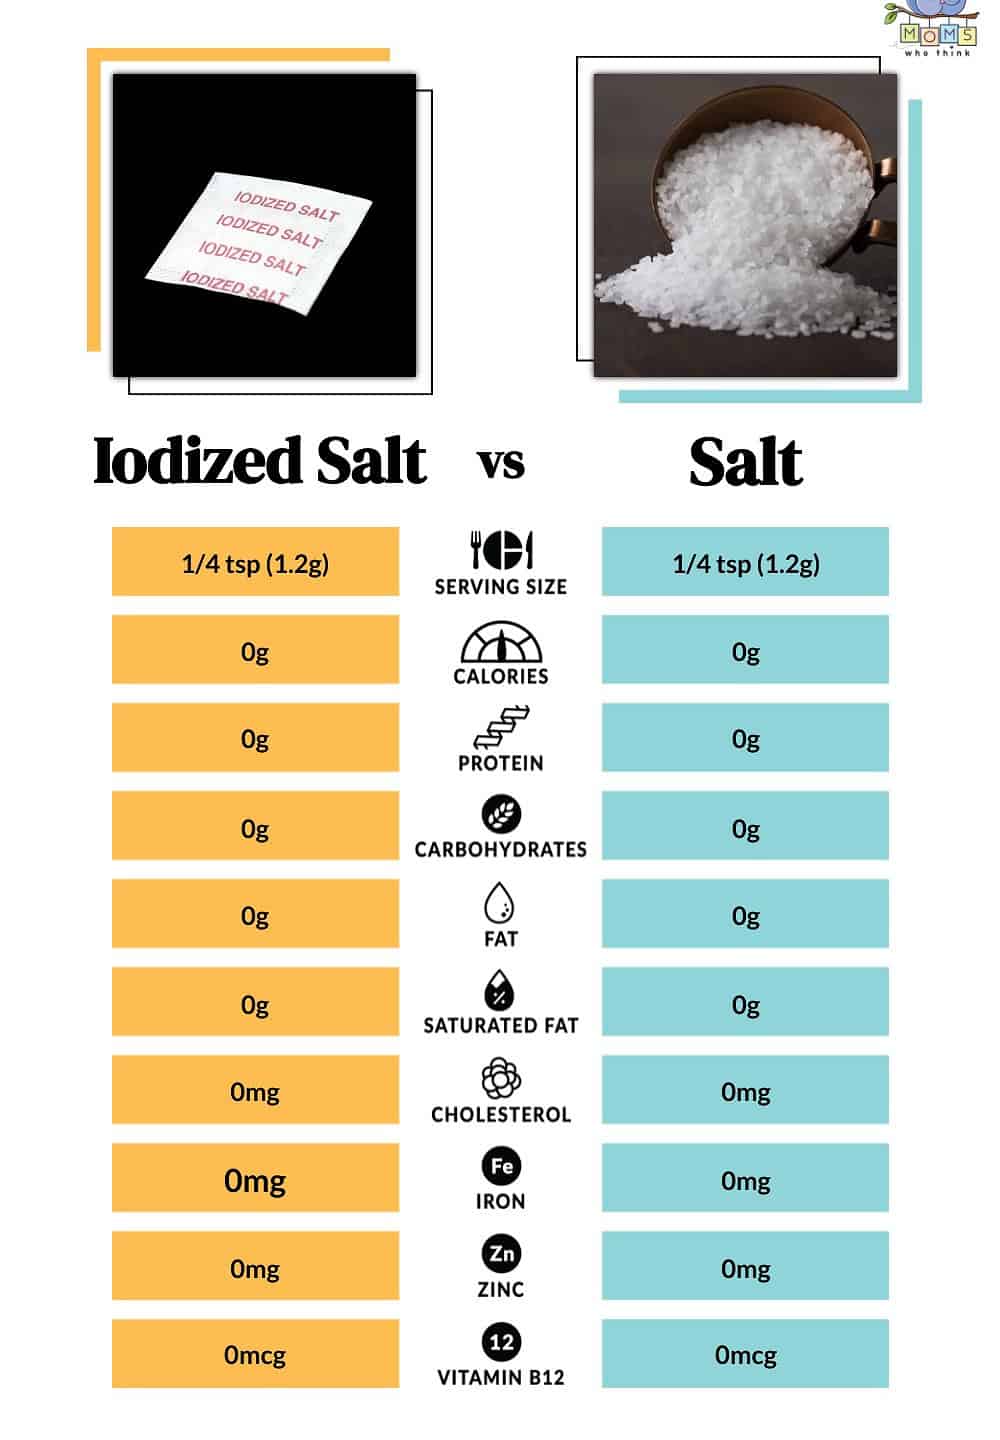 Iodized Salt vs Salt Nutritional Facts